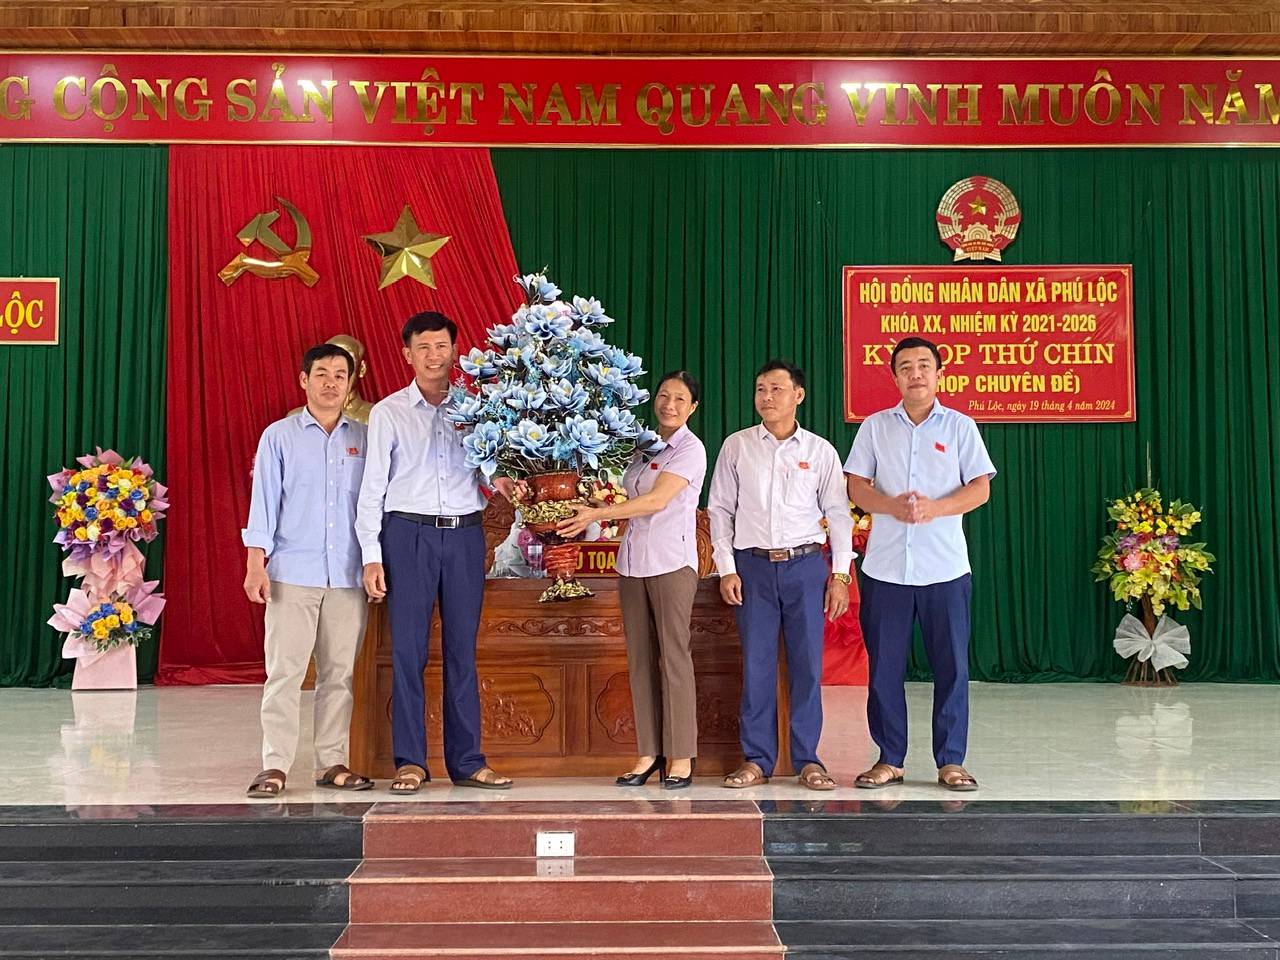 HĐND xã Phú Lộc tổ chức kỳ họp thứ 9 (Kỳ họp chuyên đề), Khóa XX, nhiệm kỳ 2021 – 2026